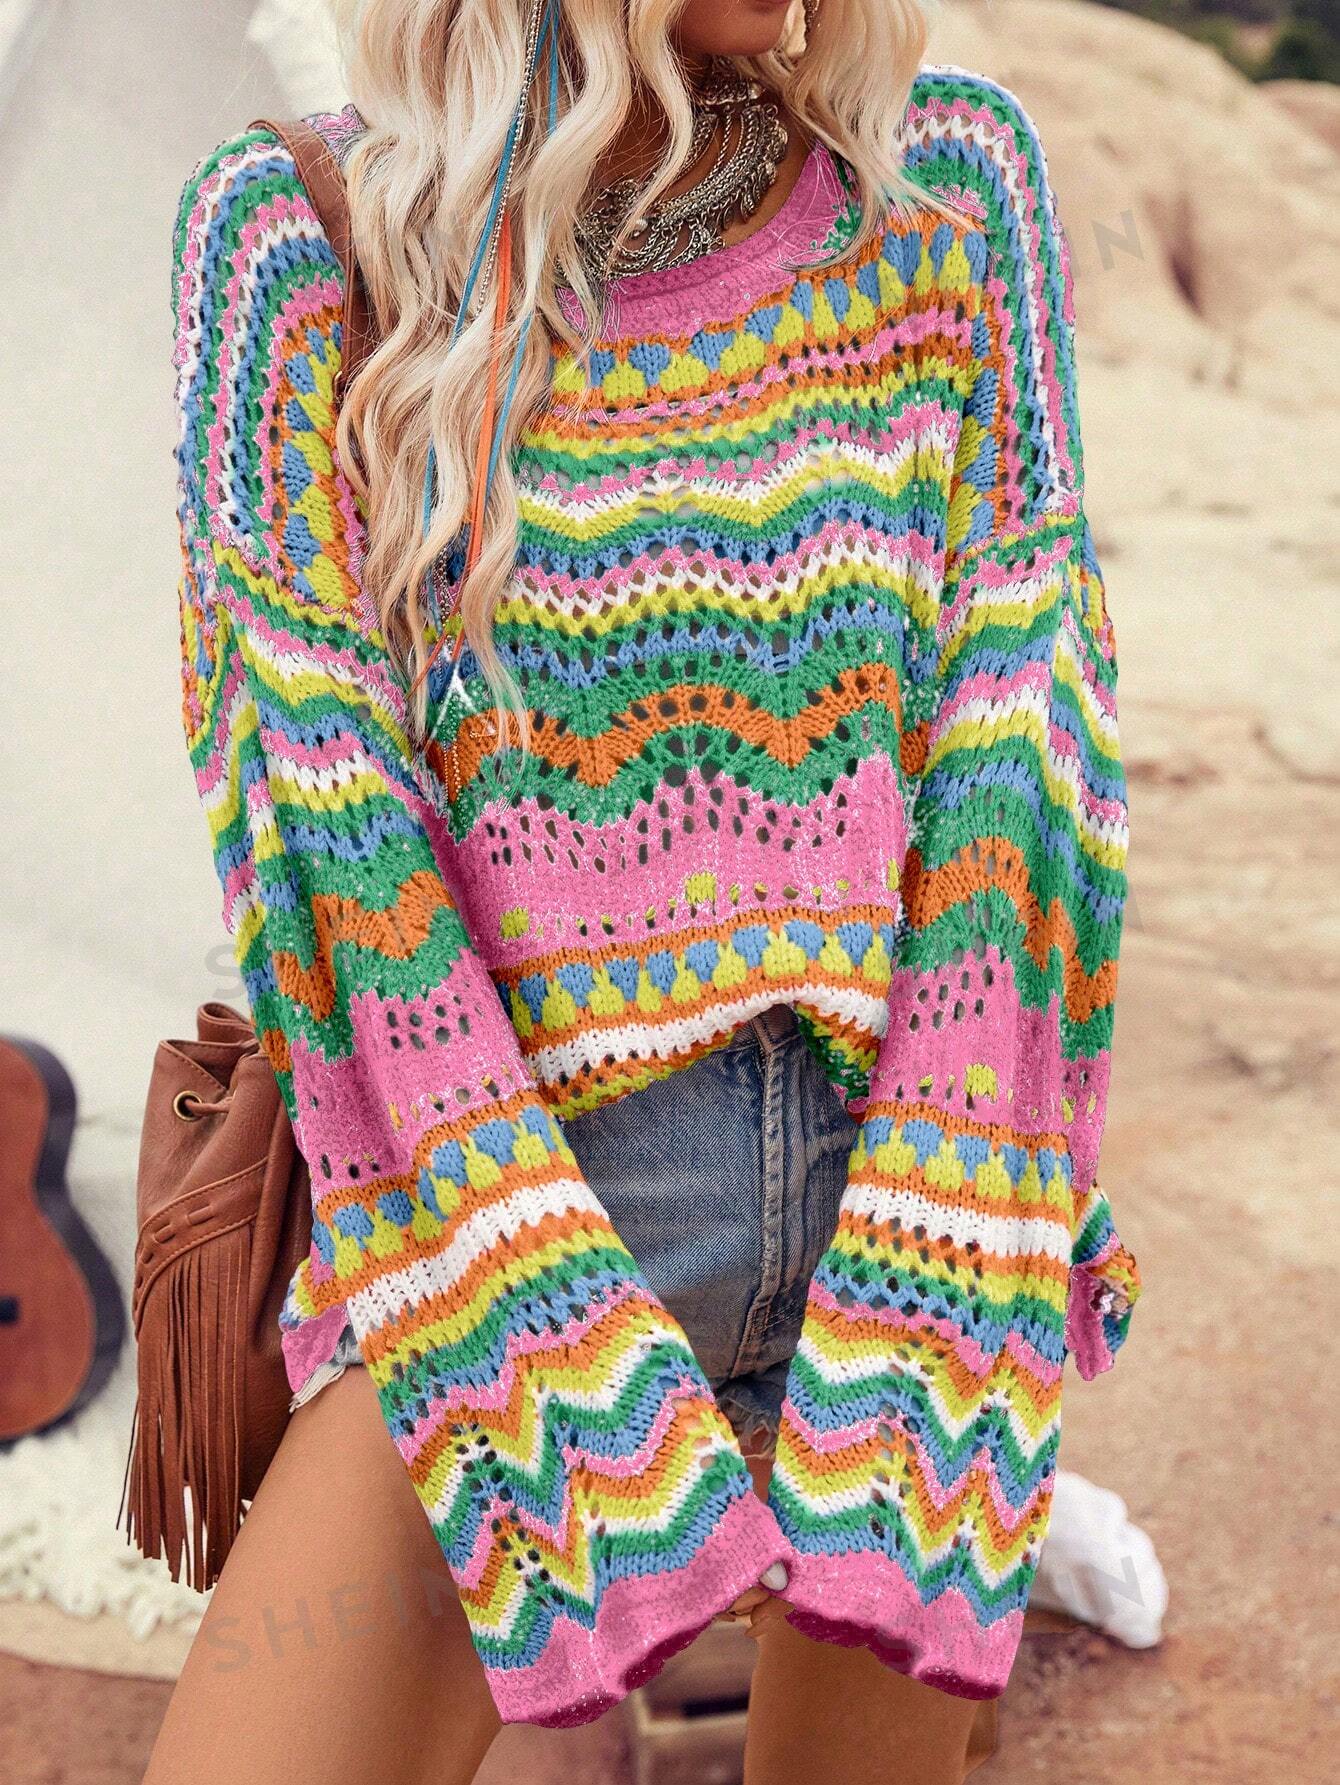 SHEIN VCAY Holiday контрастного цвета, ажурный вязаный свитер оверсайз, многоцветный